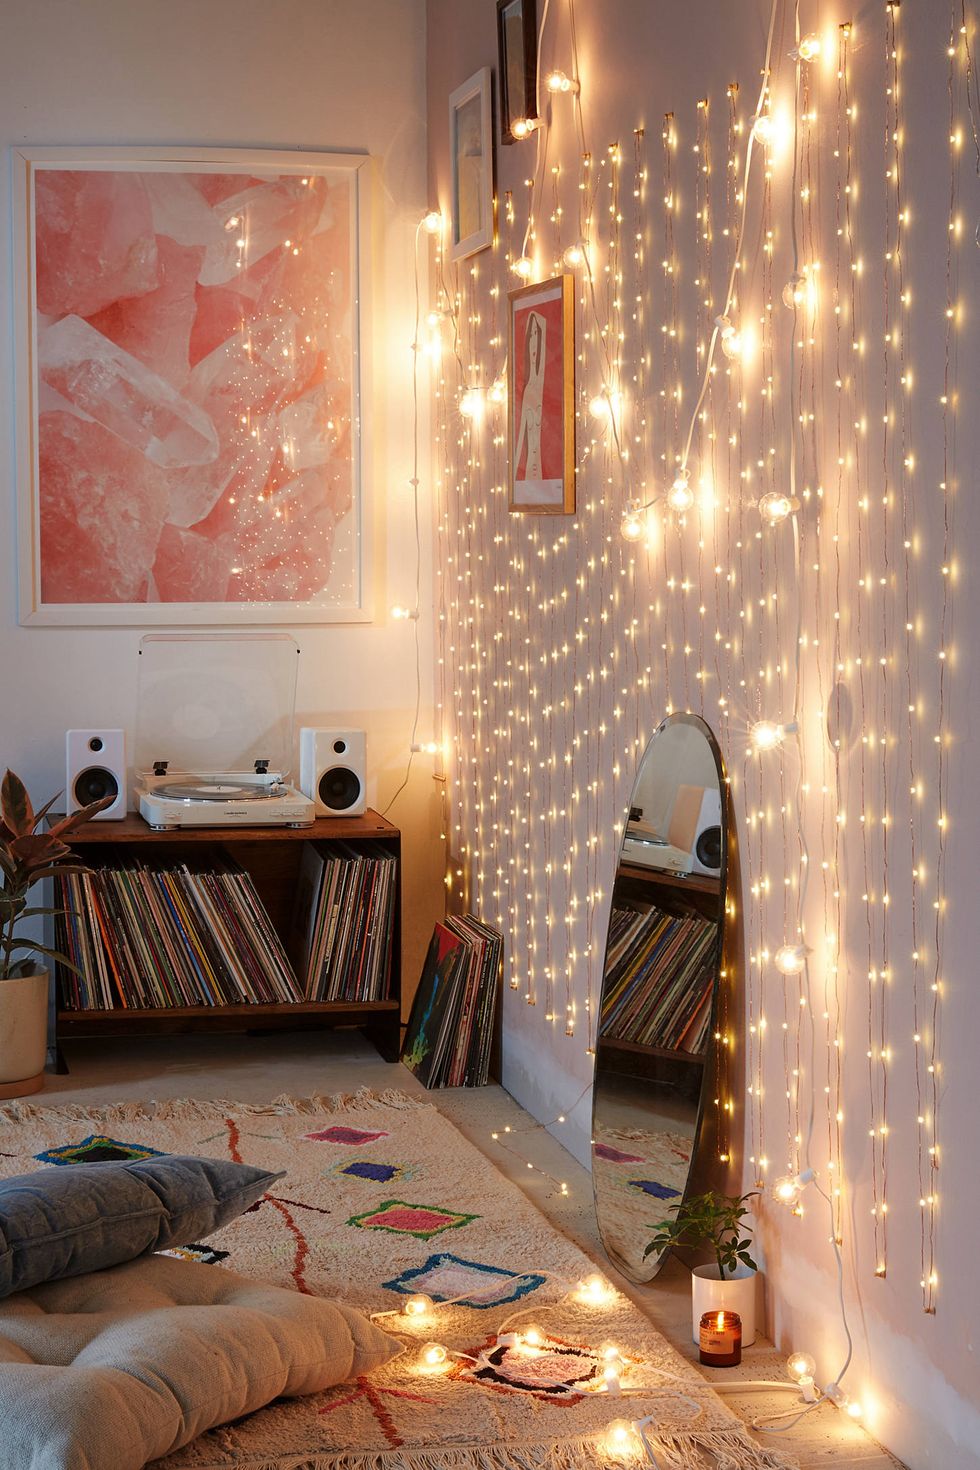 15 Best VSCO Room Ideas - Cute VSCO Room Decor Inspiration